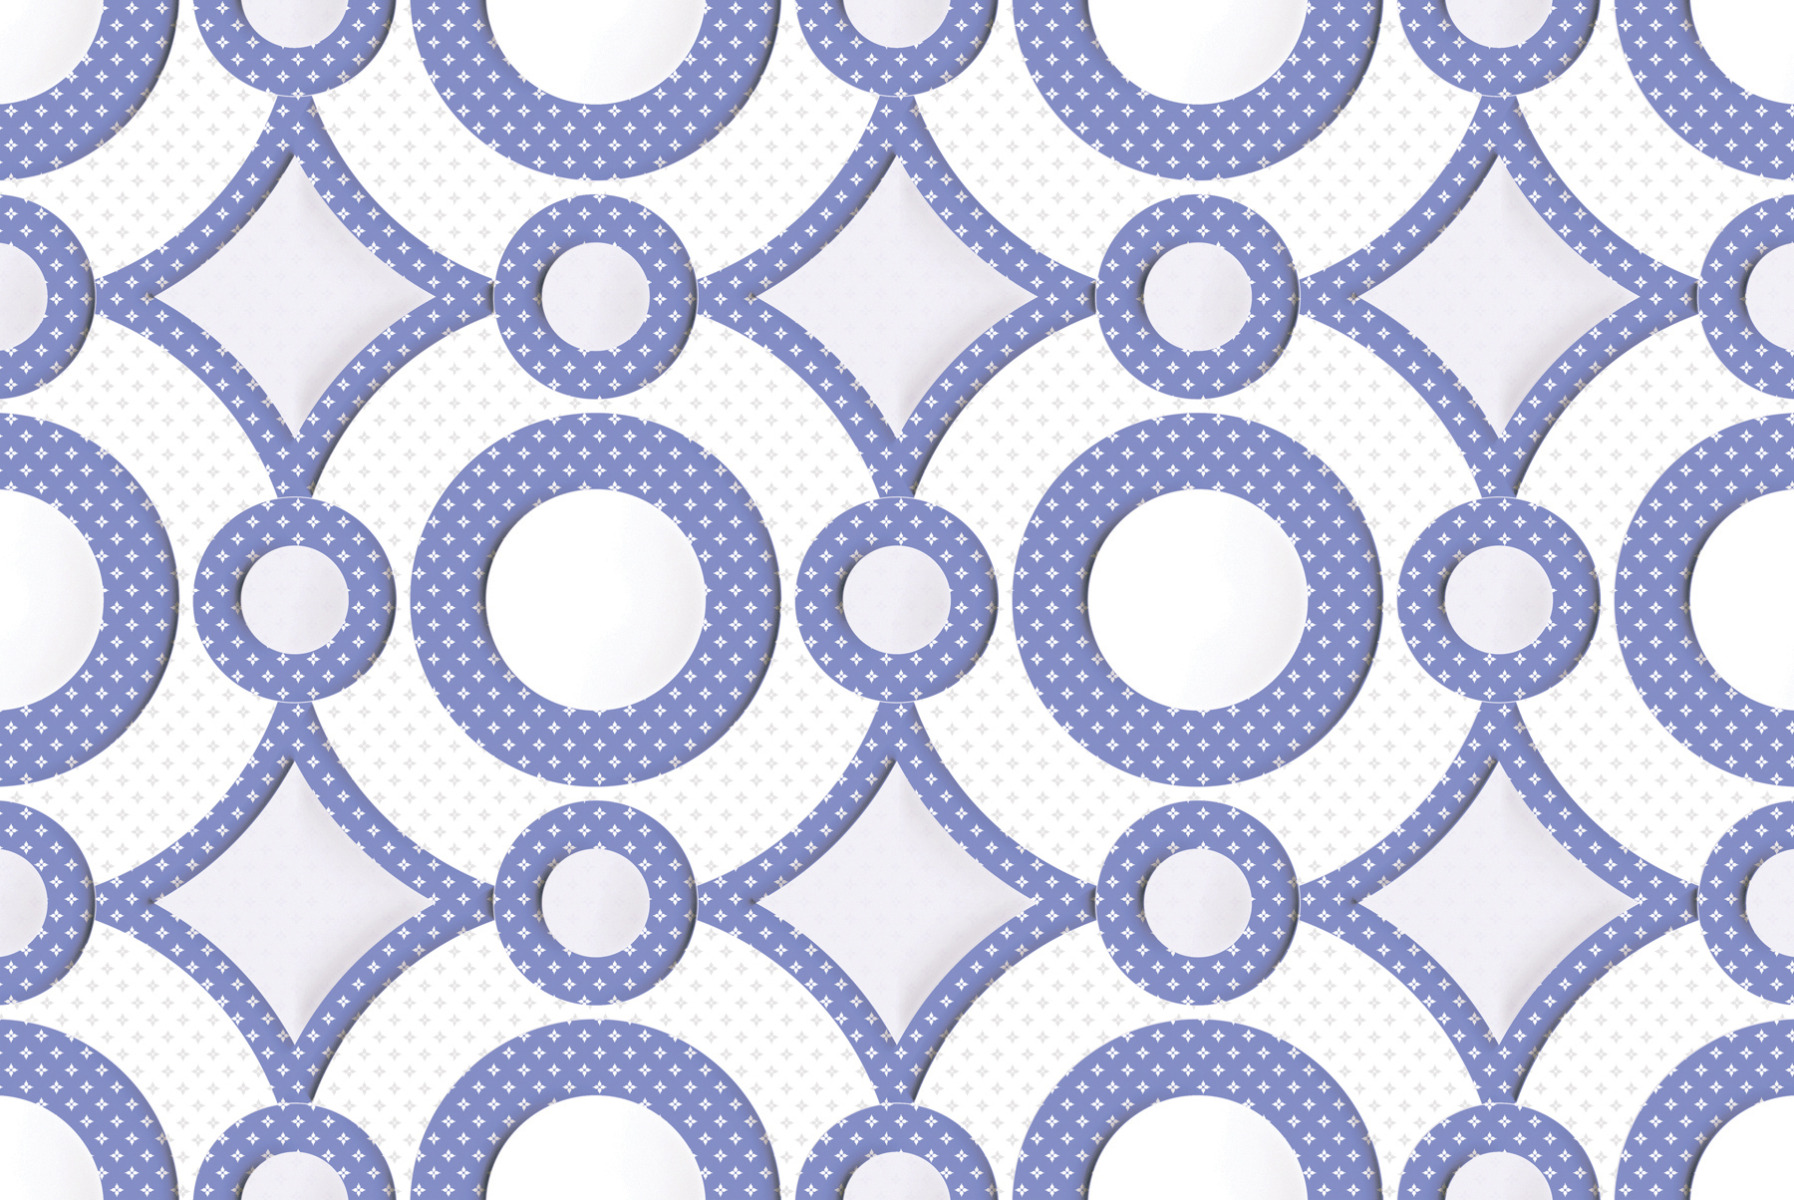 Purple Tiles for Bathroom Tiles, Kitchen Tiles, Accent Tiles